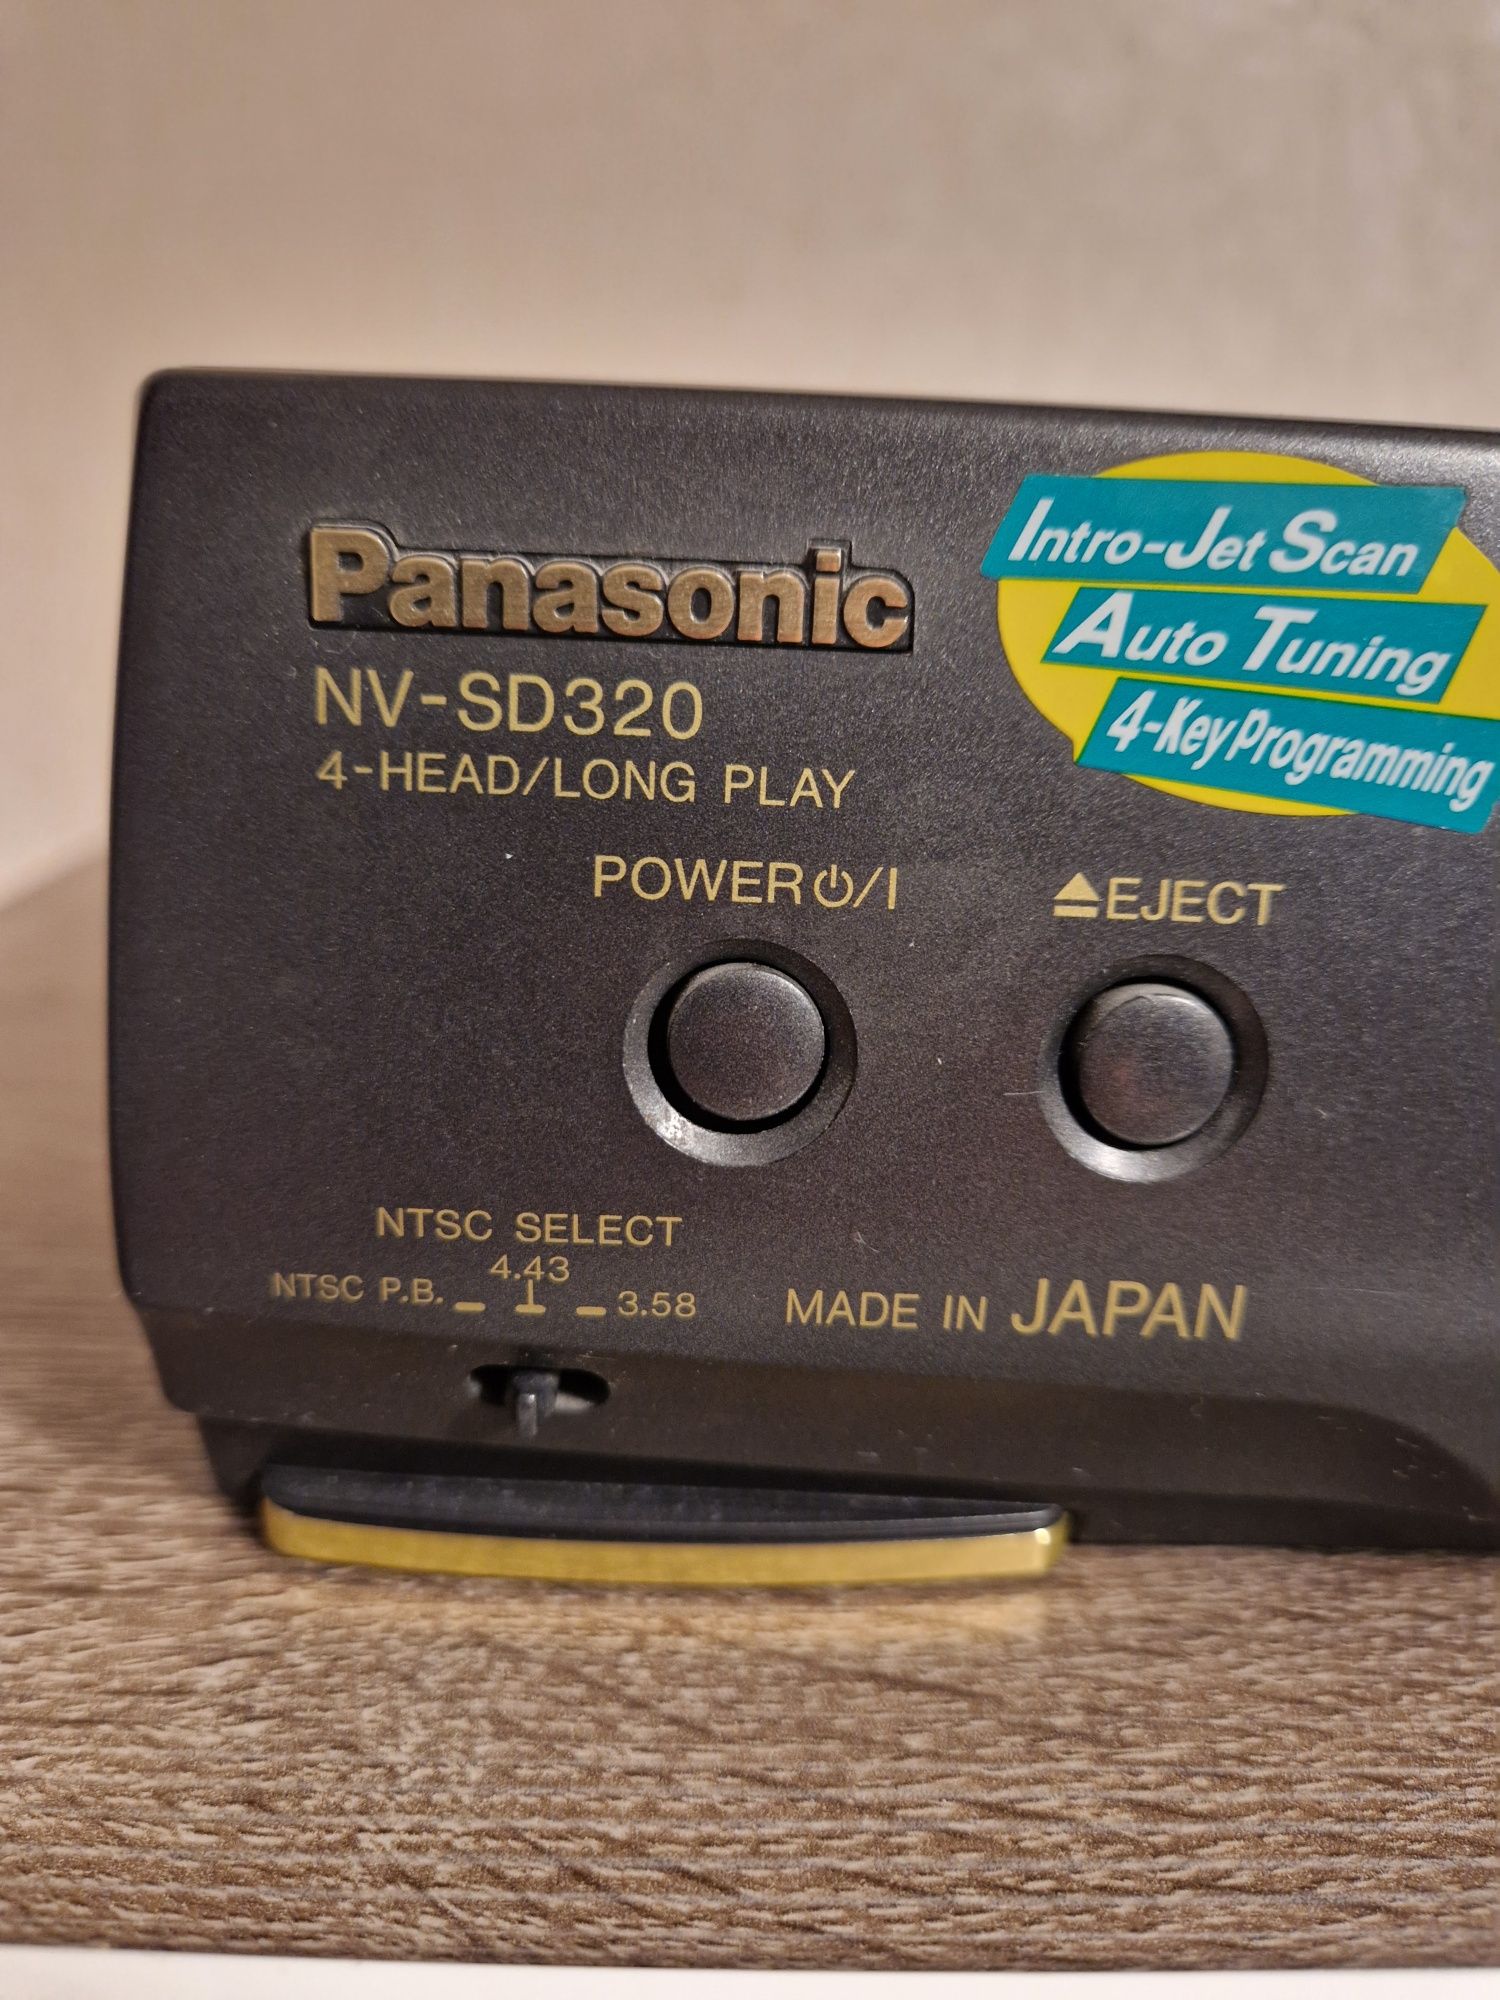 Відеомагнітофон Panasonic  NV-SD 320  
В робочому стані